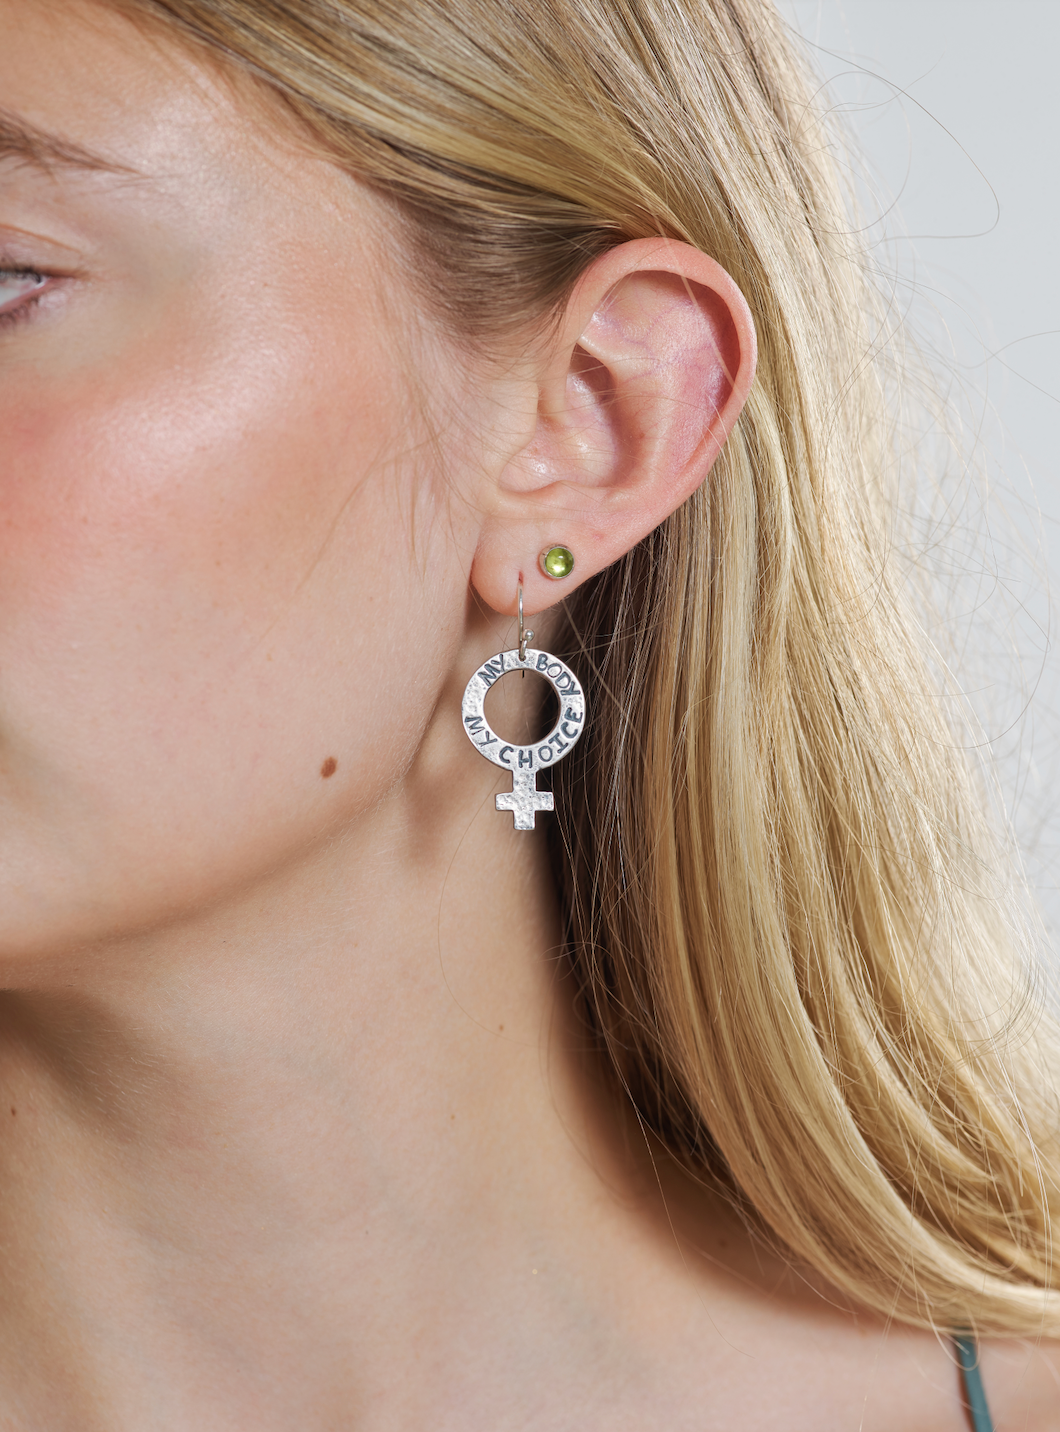 I Am From Aruba Ear Dangle Silver Drop Earring Jewelry Woman - Walmart.ca